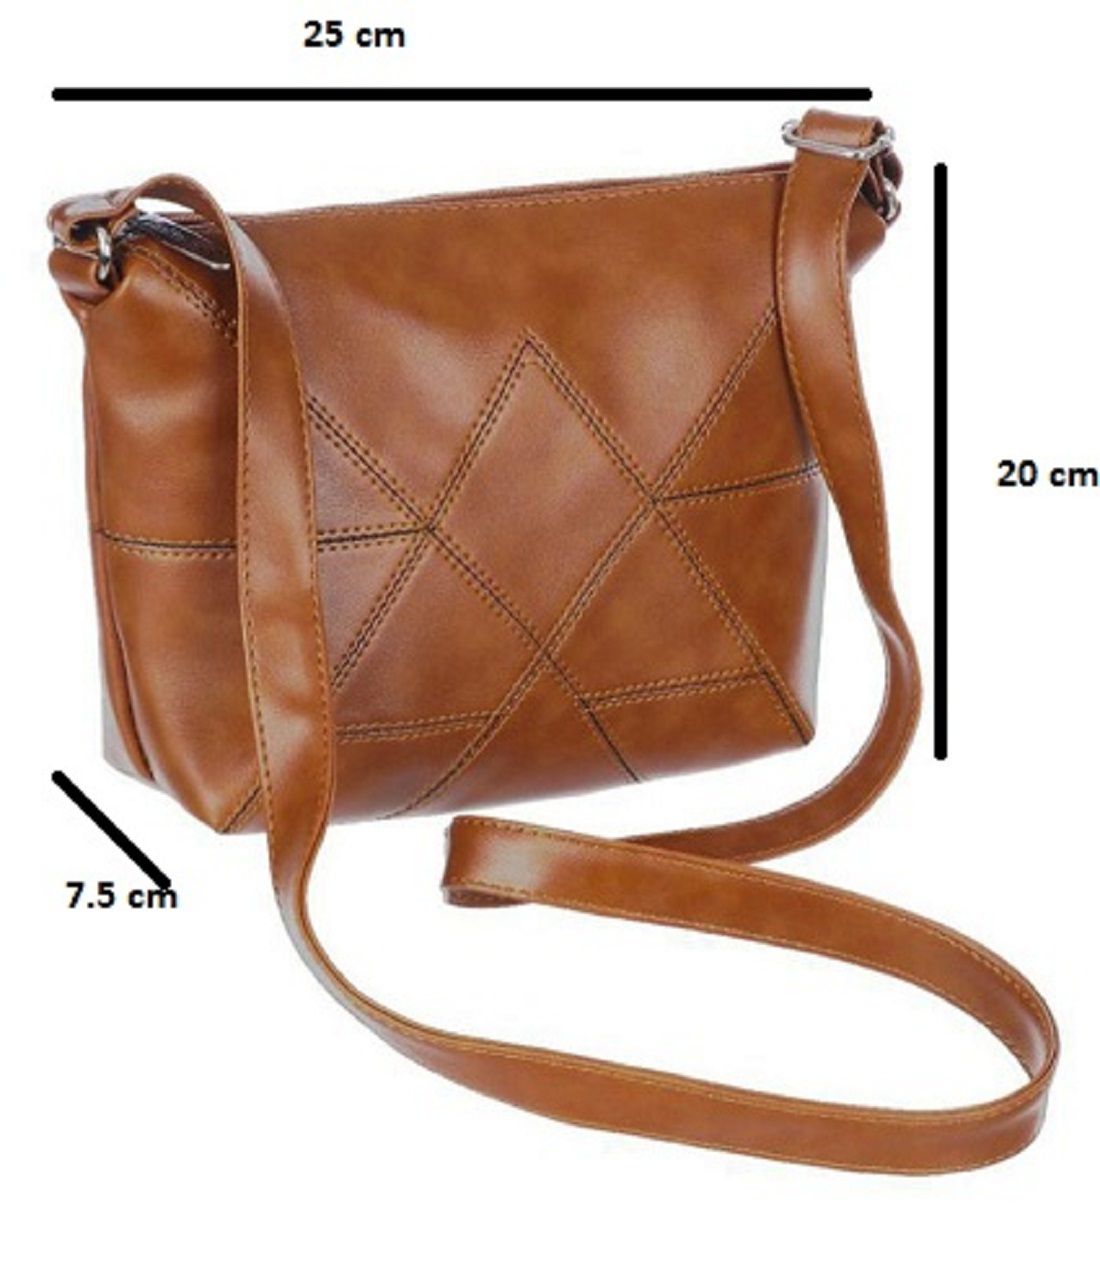 snapdeal handbags below 500